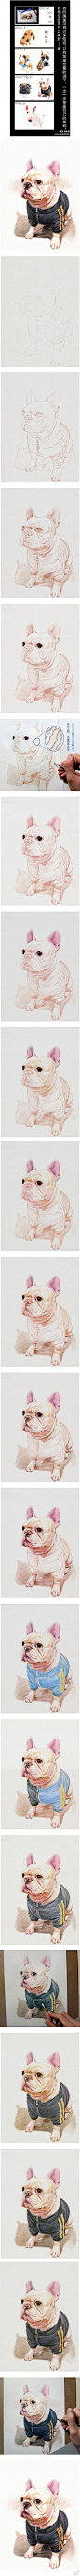 彩色铅笔绘制狗狗过程.jpg